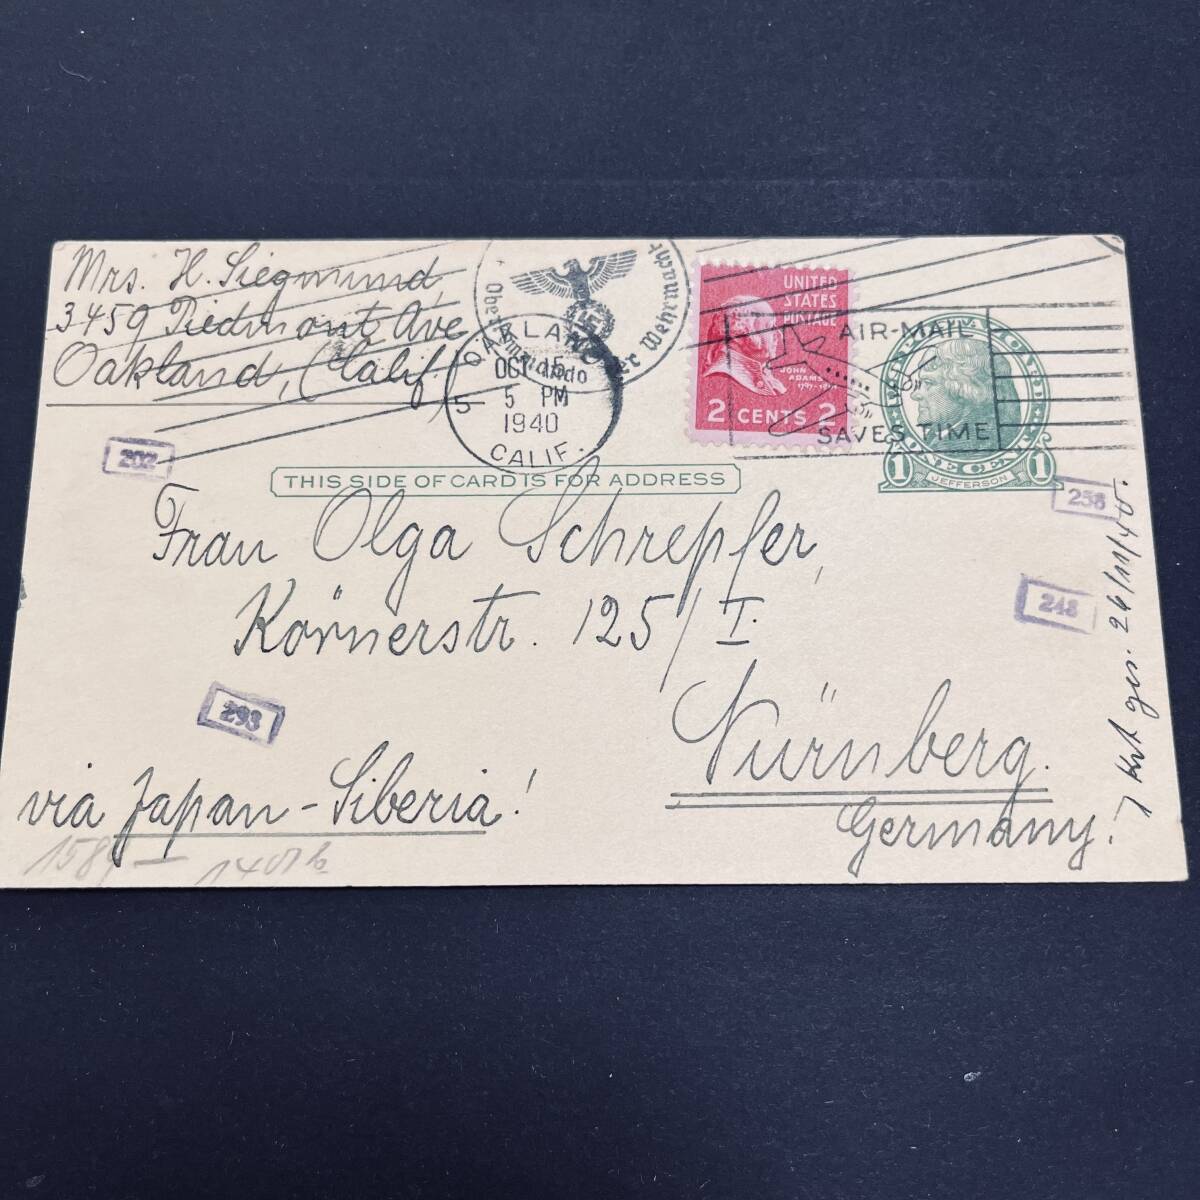 1940年 「日本-シベリア鉄道経由」米国発ドイツ宛はがき使用例 米1cはがきに2c切手加貼 ナチ検閲印および数字検閲印押印 エンタイア_画像1